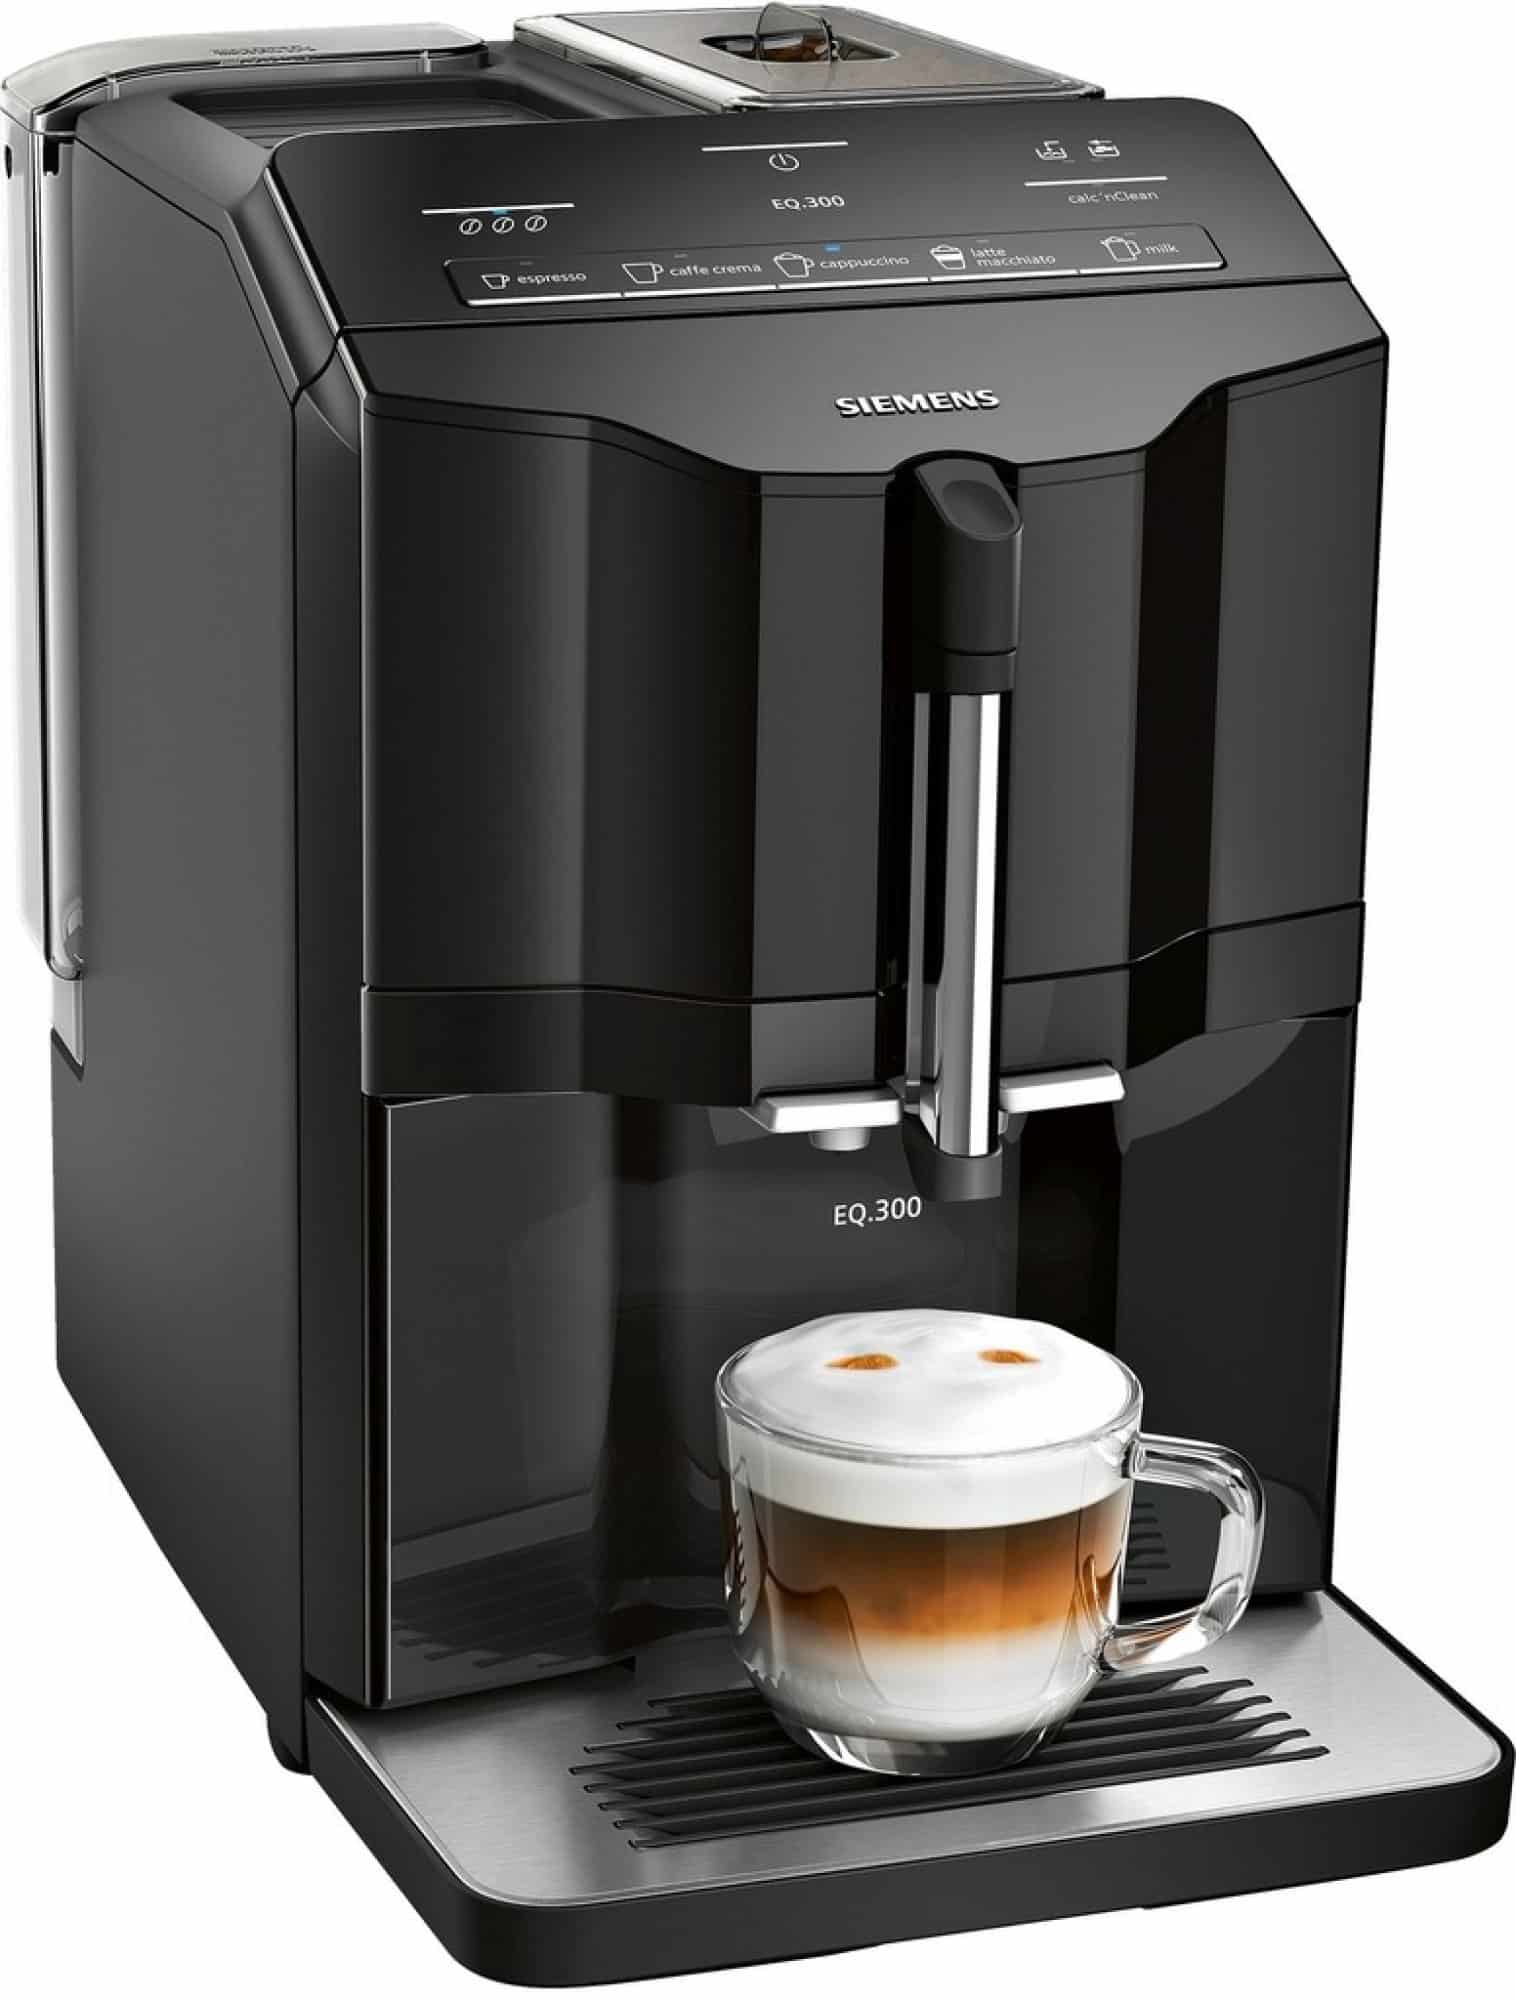 Automatický kávovar značky Siemens s dotykovým ovládáním.